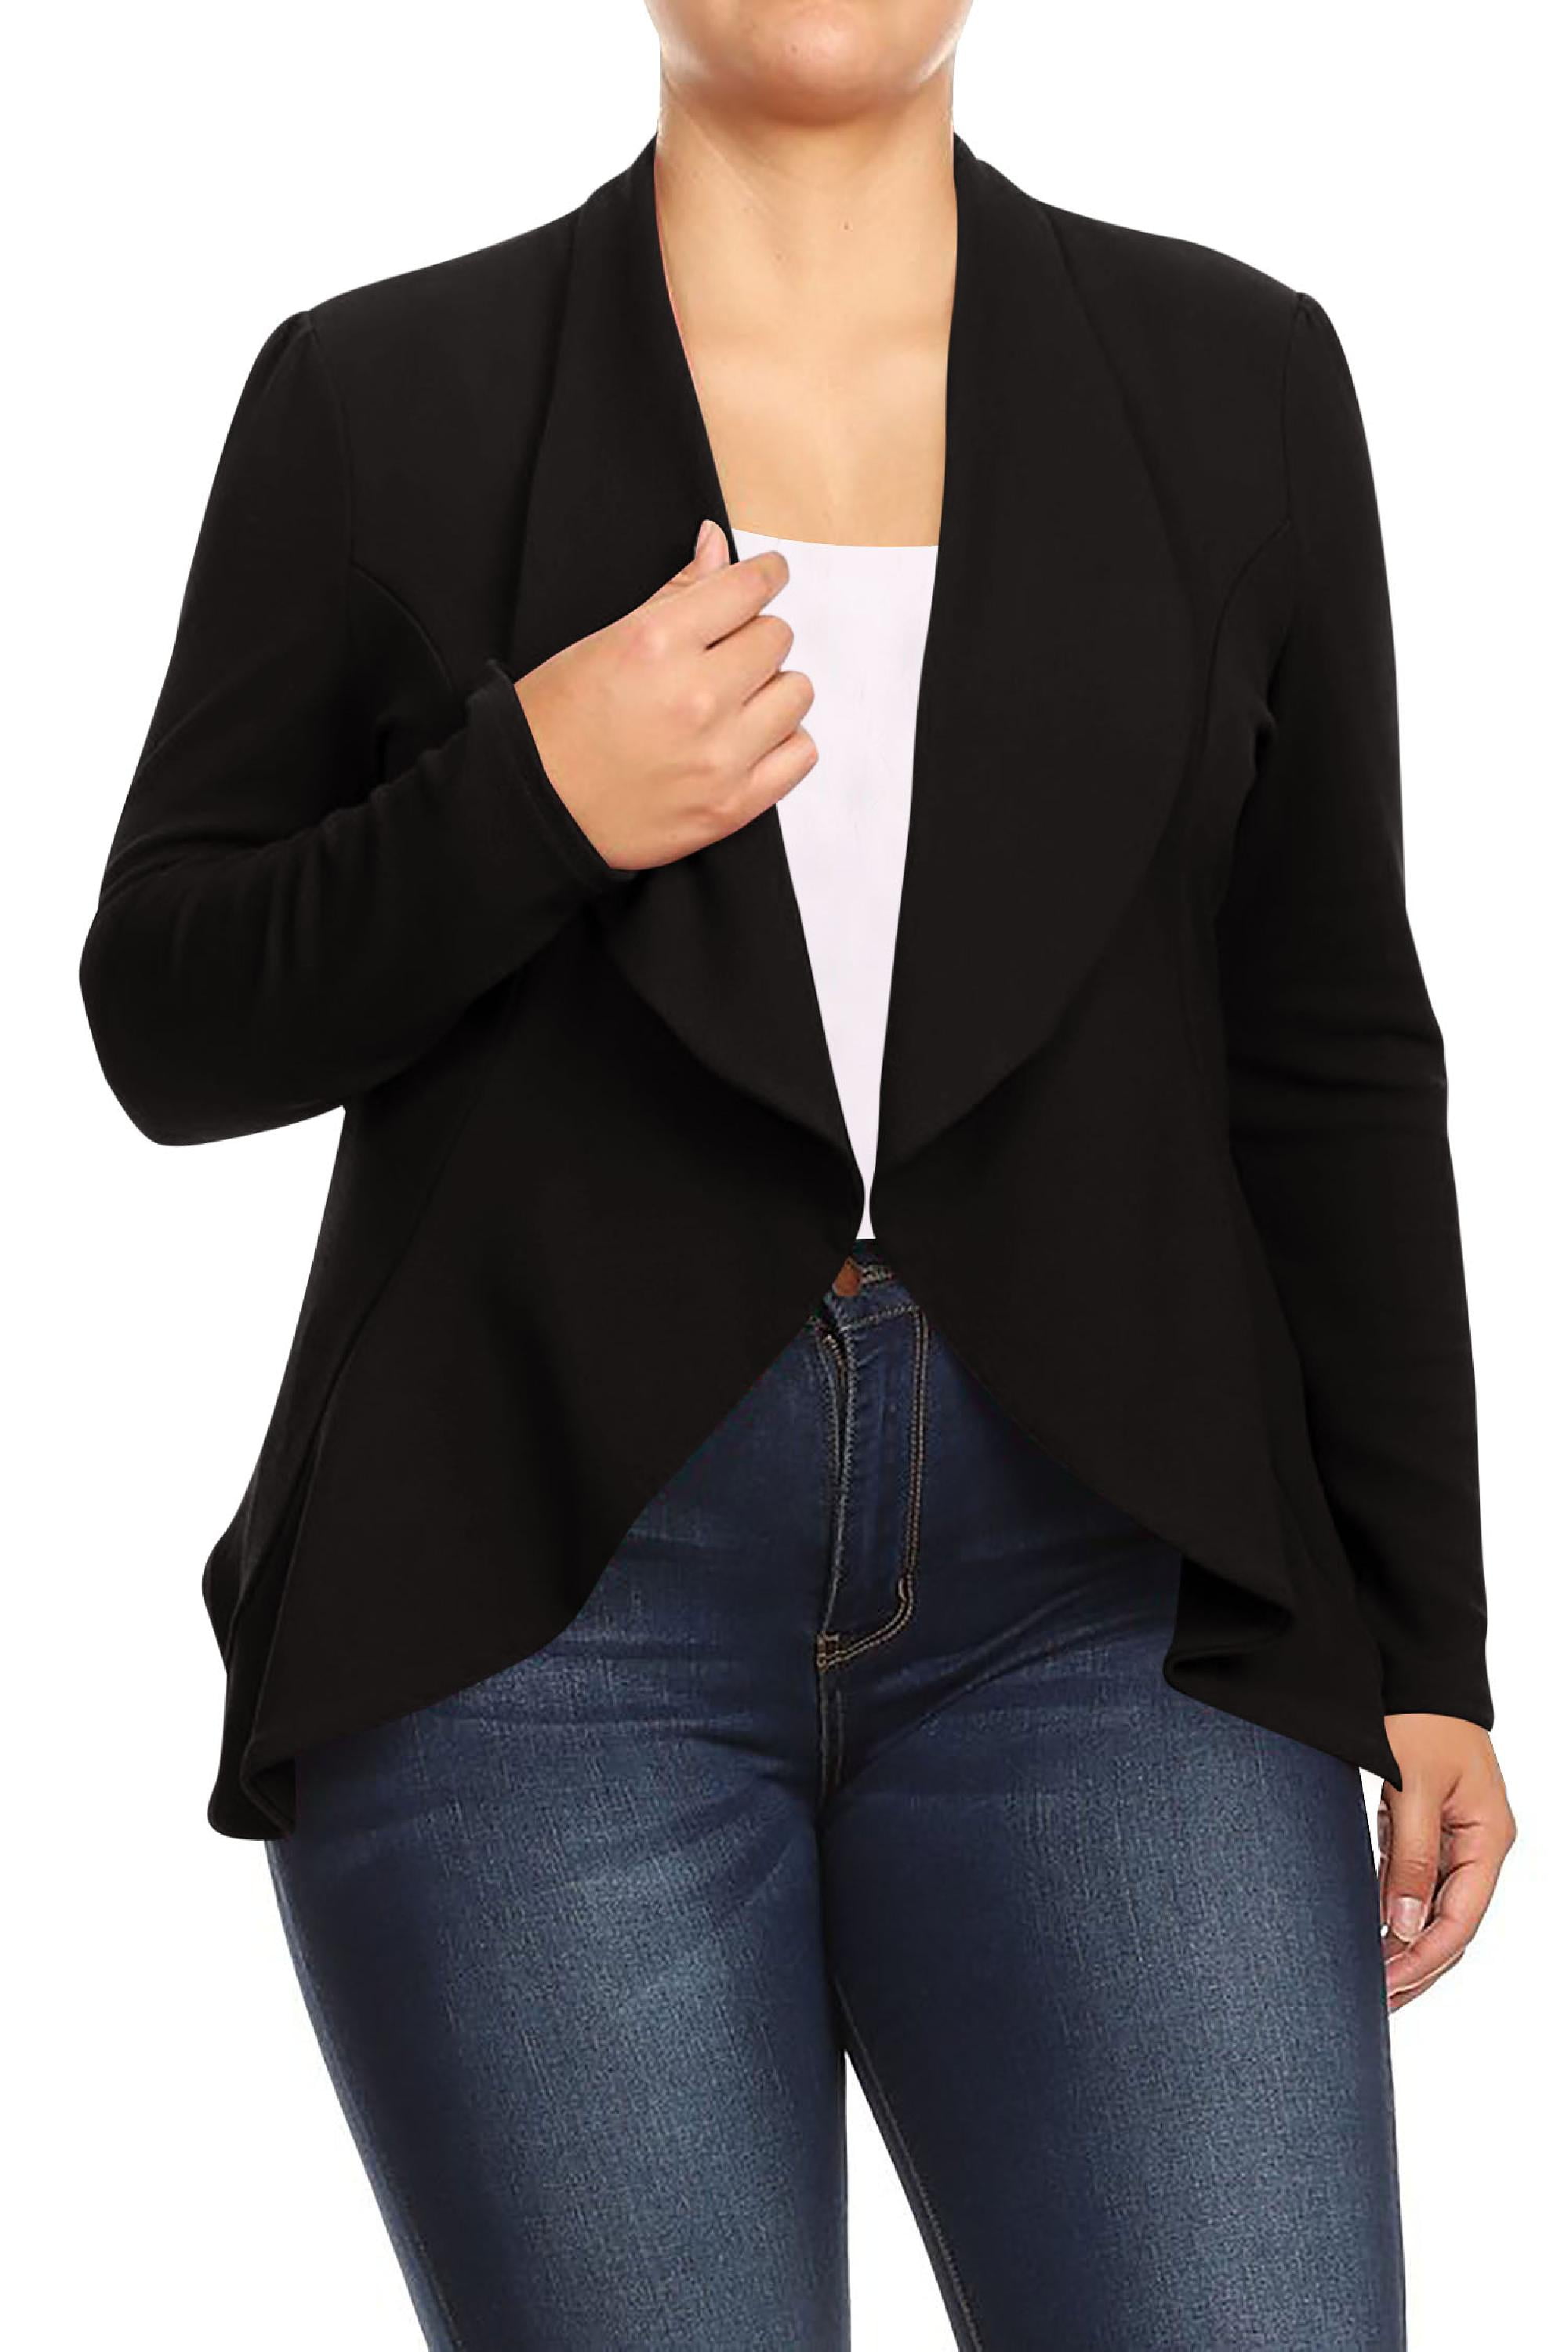 Women's Plus Size Casual Long Sleeves Open Front Solid Office Work Wear Blazer  Jacket 